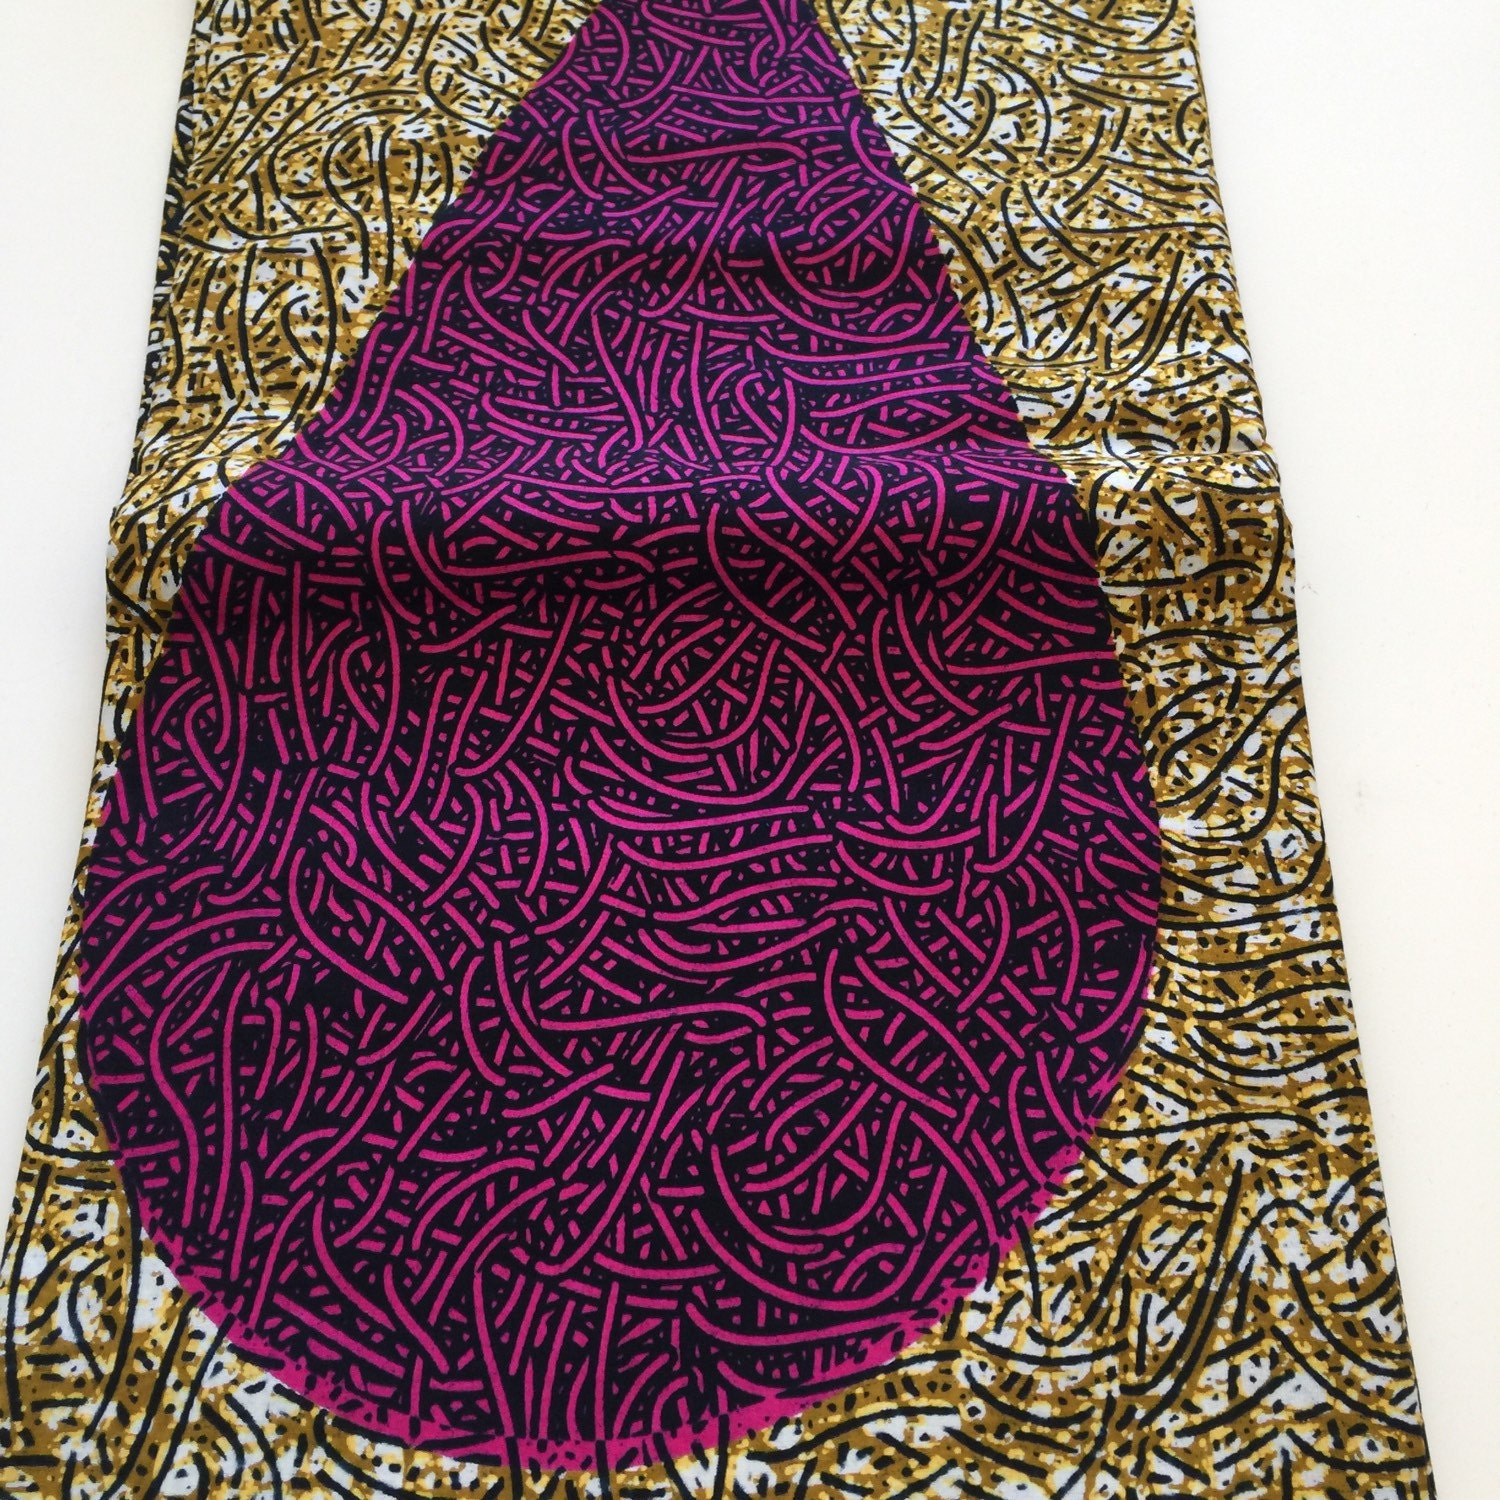 African Dutch Wax Print Fabric/ 6 Yards by LudlowFabrics on Etsy